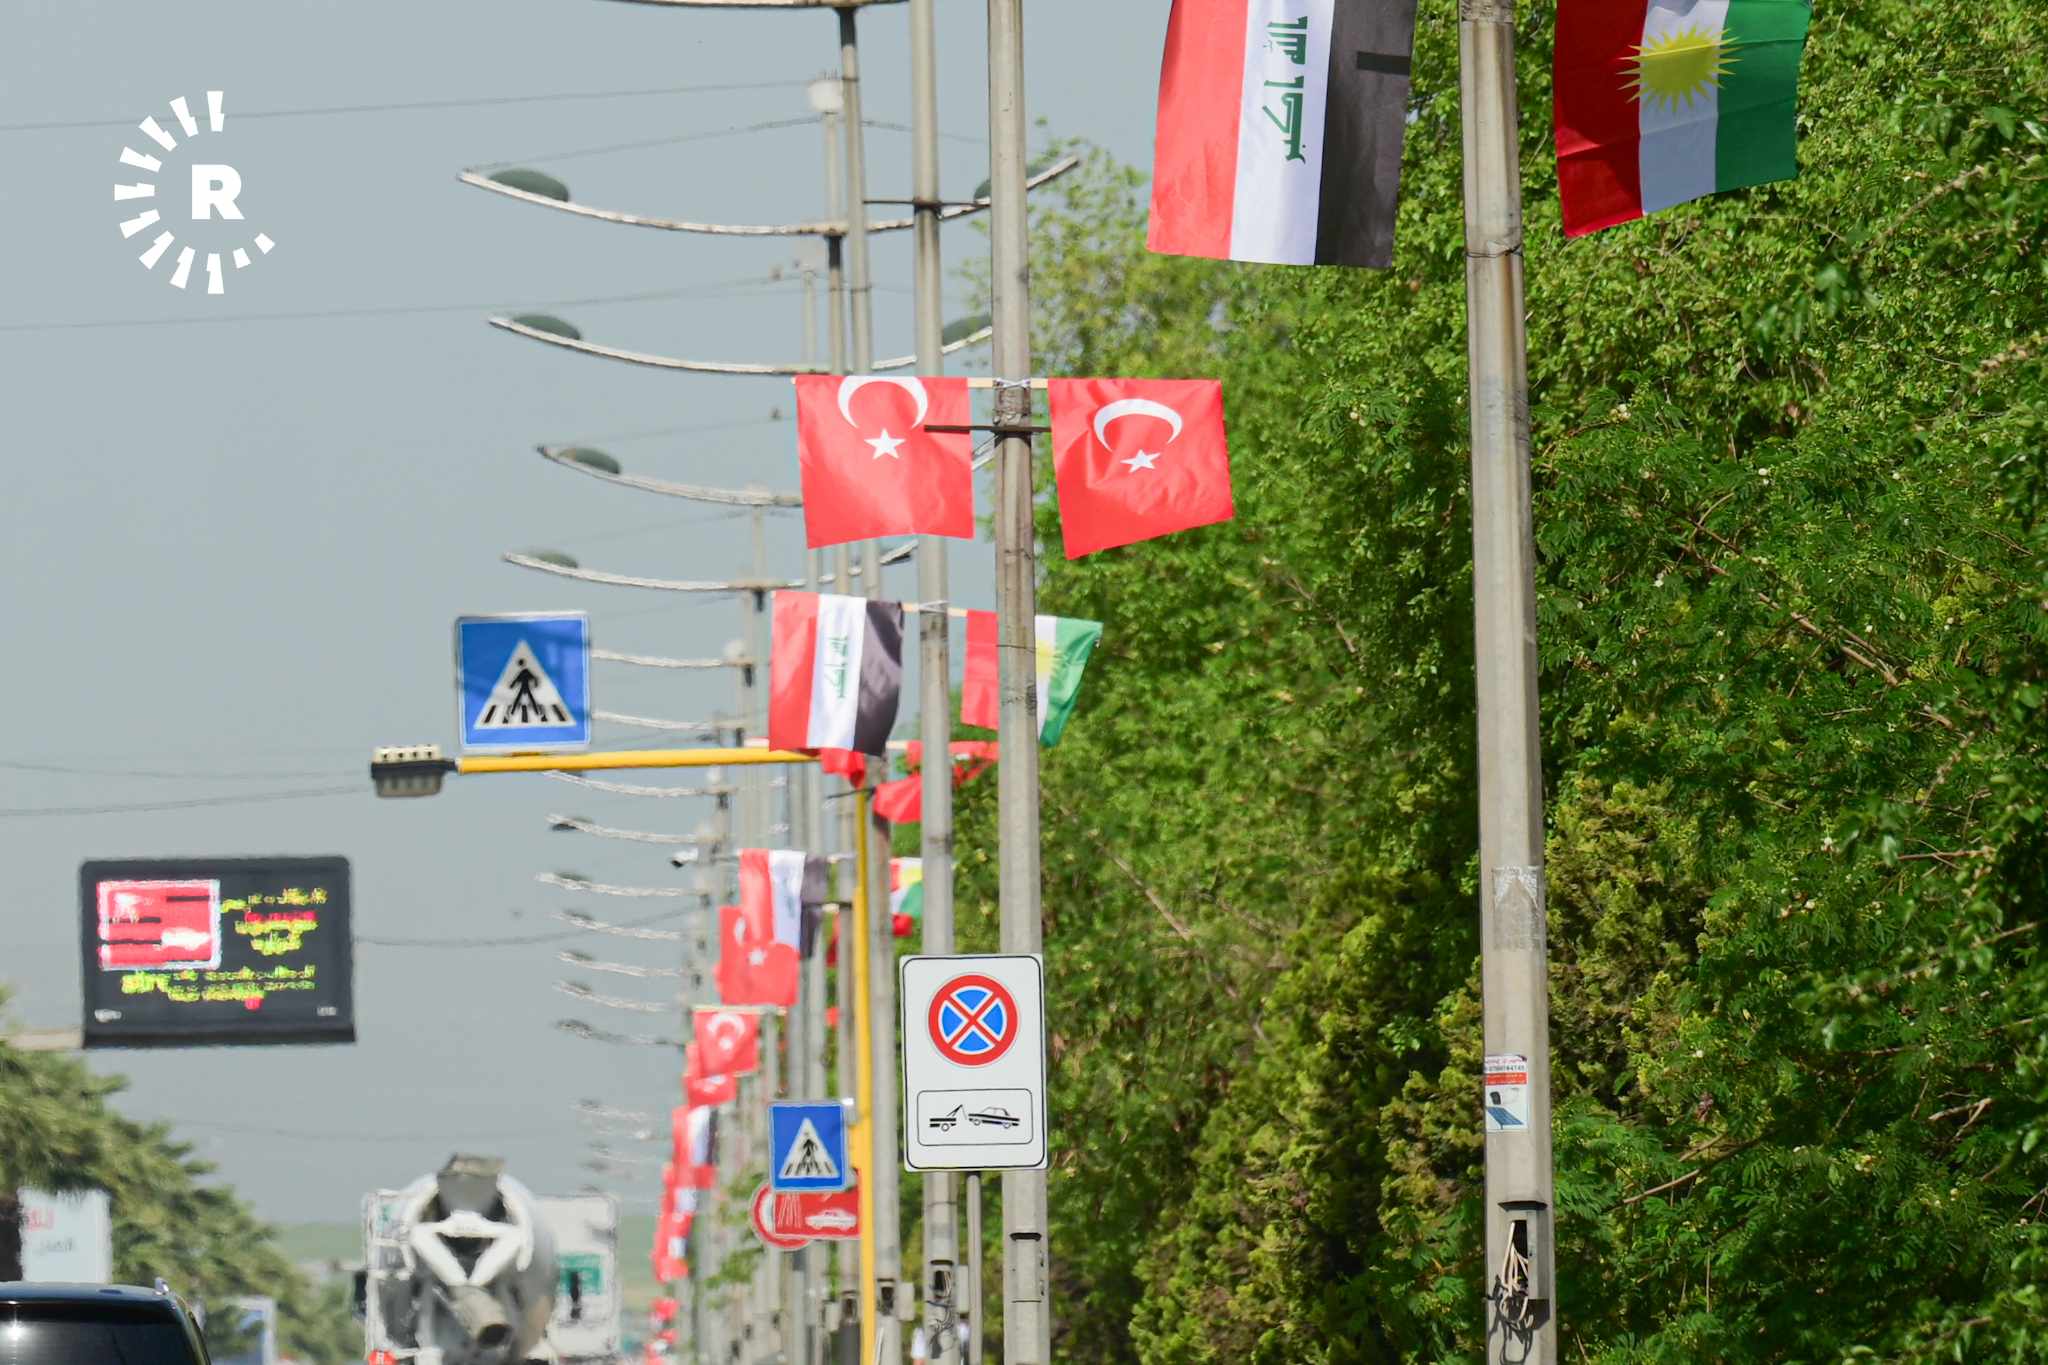 Foto: Başkent Erbil'deki sokaklar Türkiye, Irak ve Kürdistan bayraklarıyla süslendi-Bilind Tahir Abdullah 